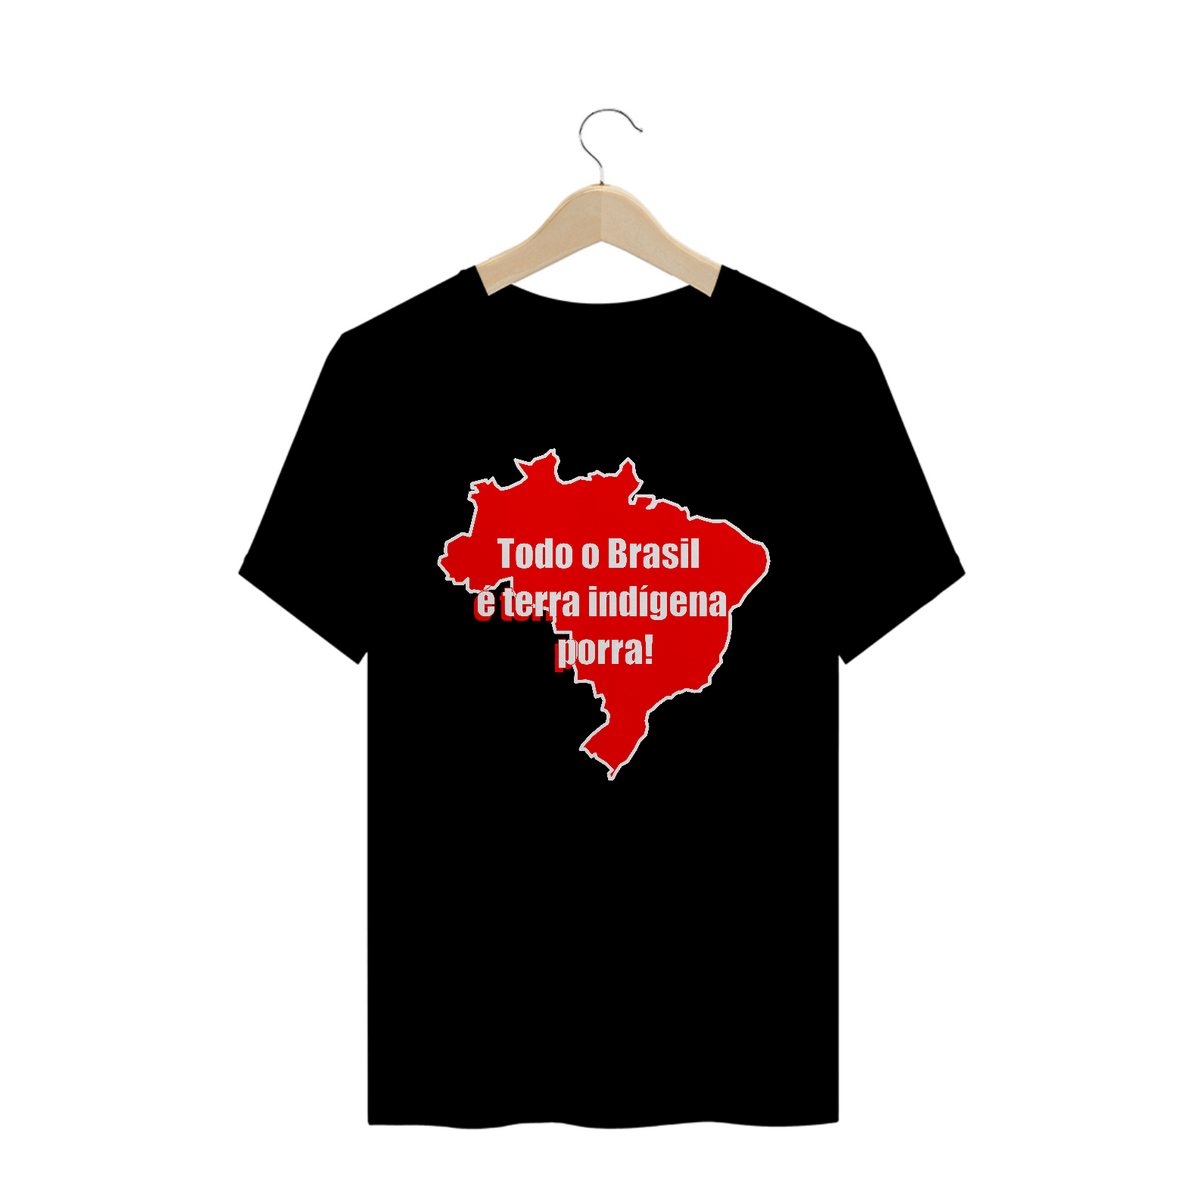 Nome do produto: Todo o Brasil é terra indígena porra!